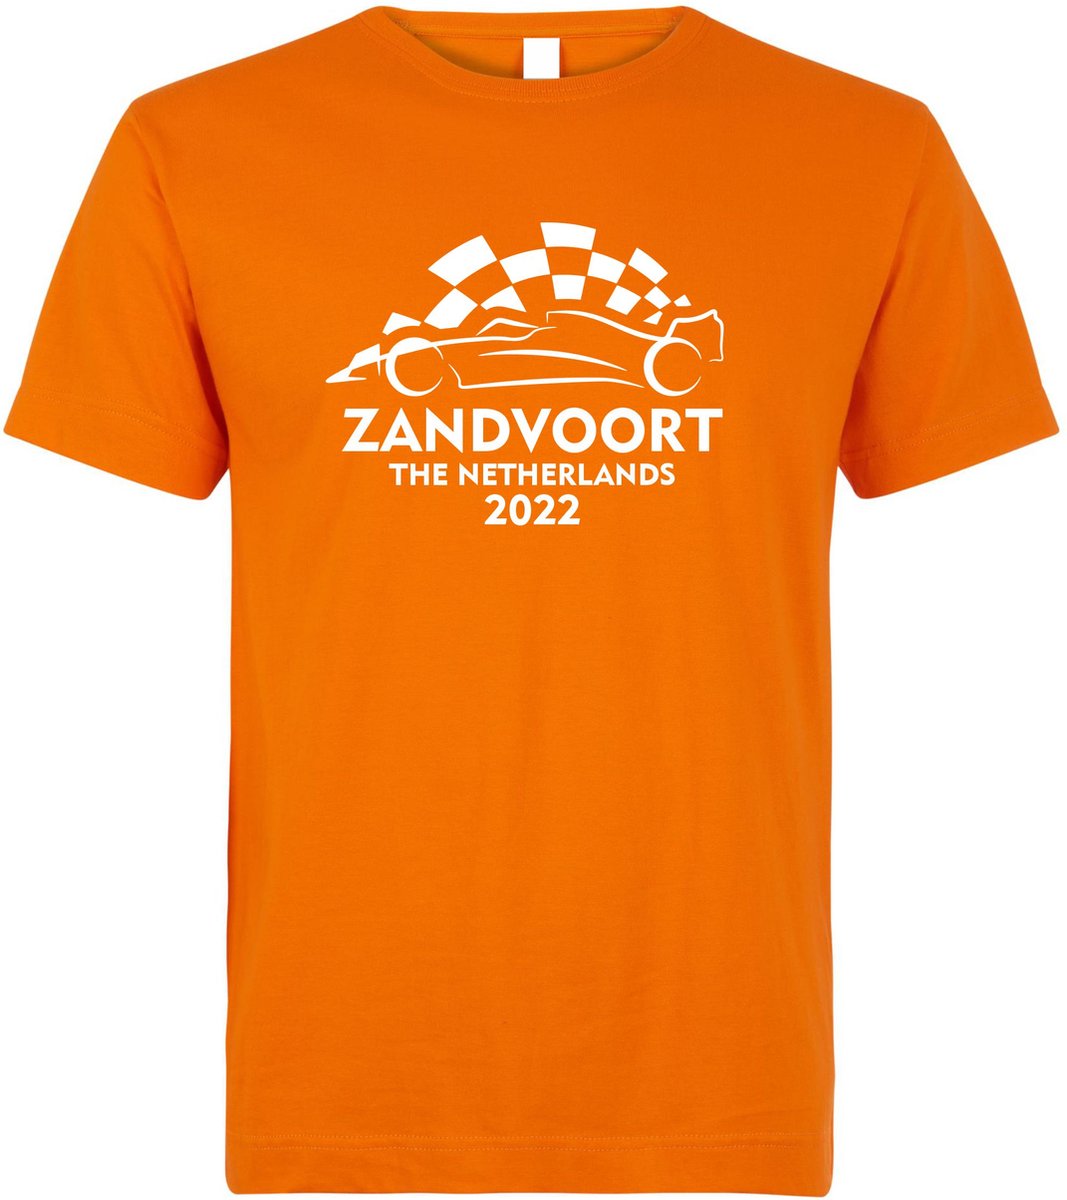 T-shirt kinderen Zandvoort 2022 met raceauto | Max Verstappen / Red Bull Racing / Formule 1 fan | Grand Prix Circuit Zandvoort | kleding shirt | Oranje | maat 116